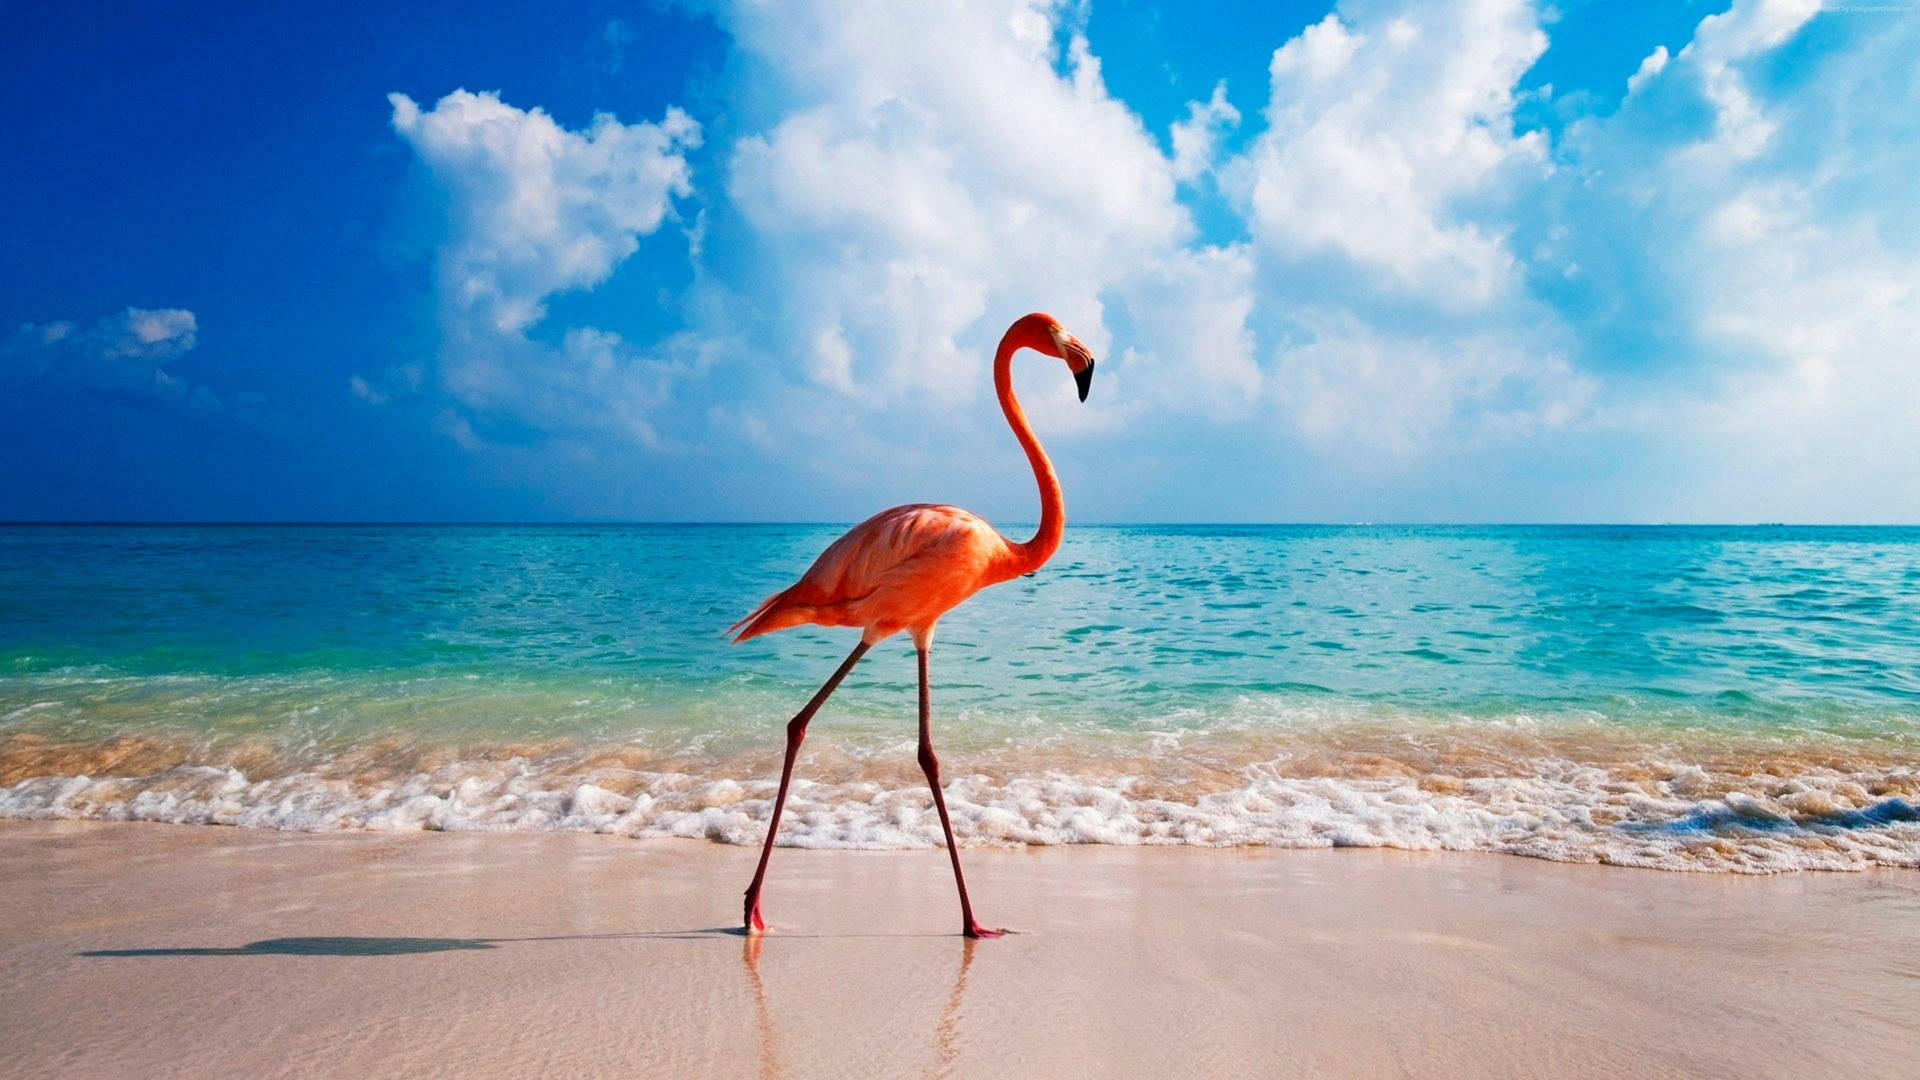 Flamingo Pictures